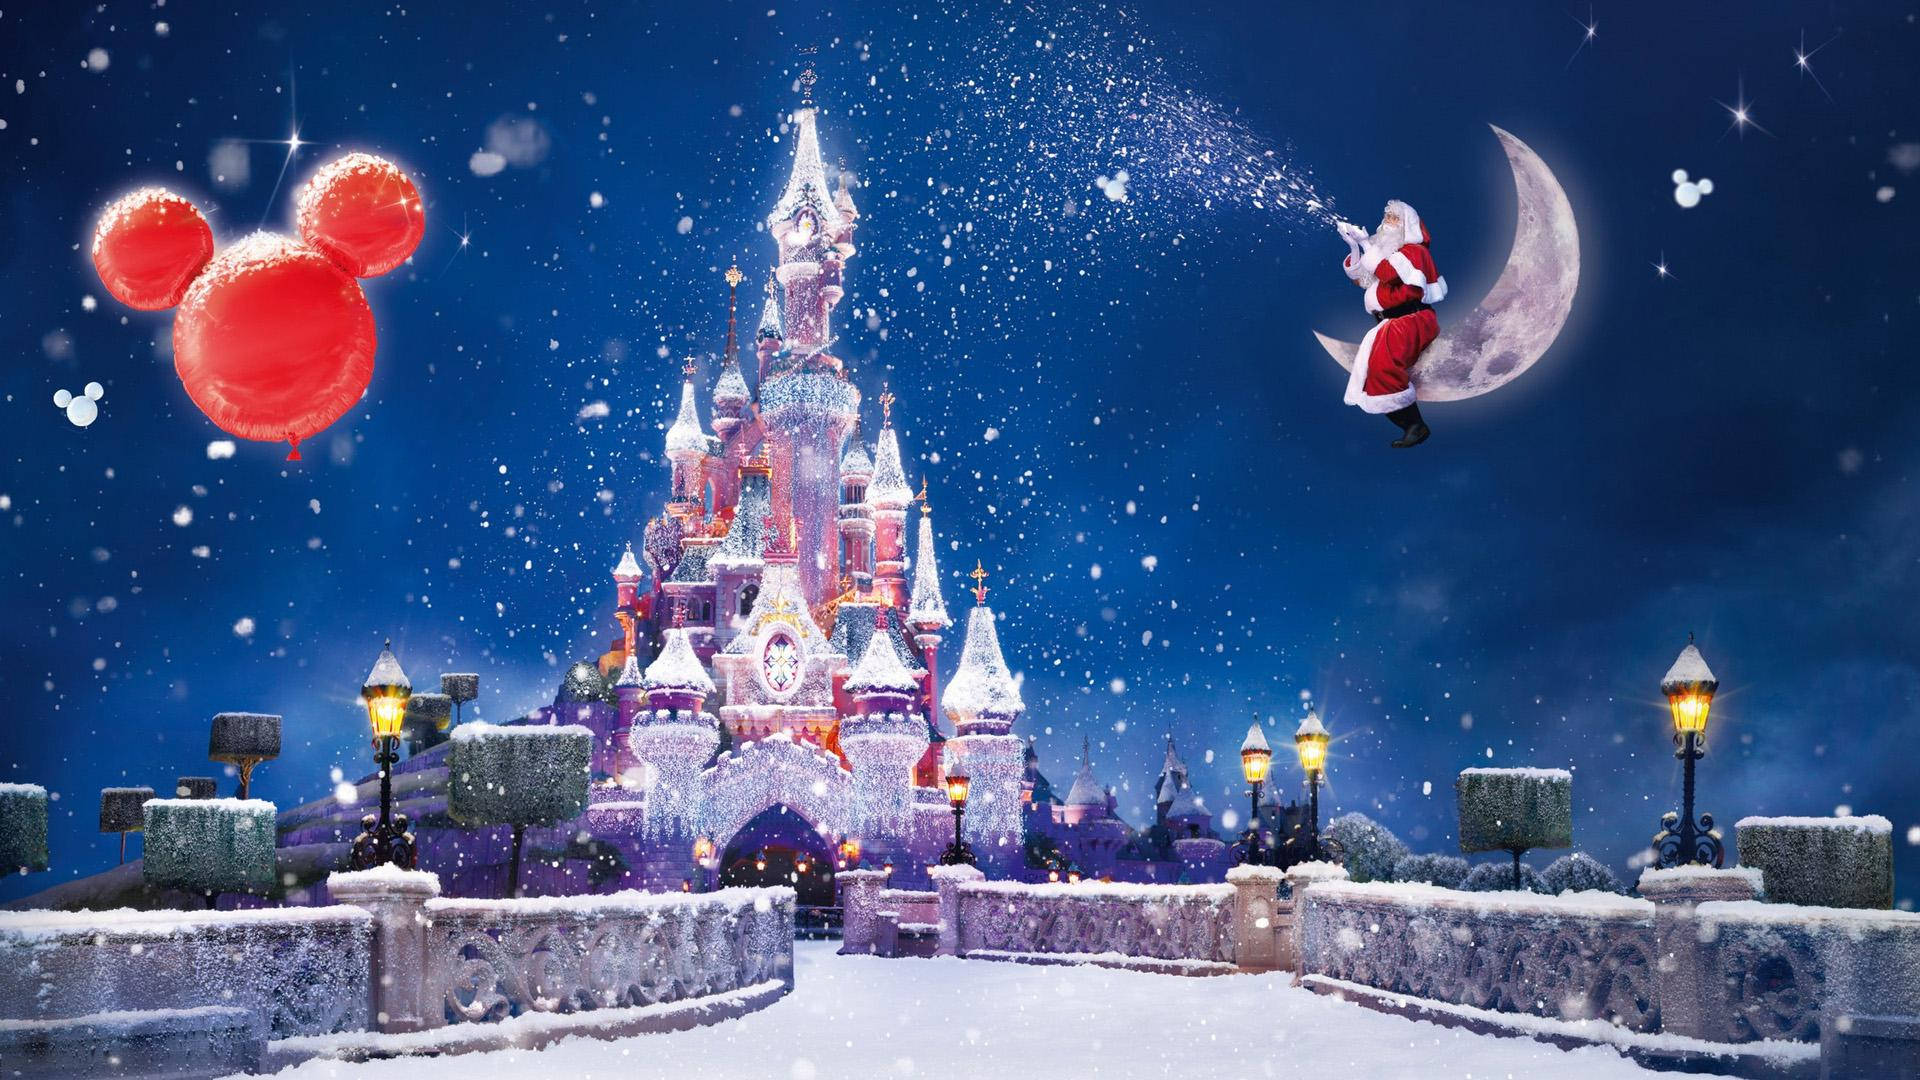 Froheweihnachten Disney Castle Wallpaper